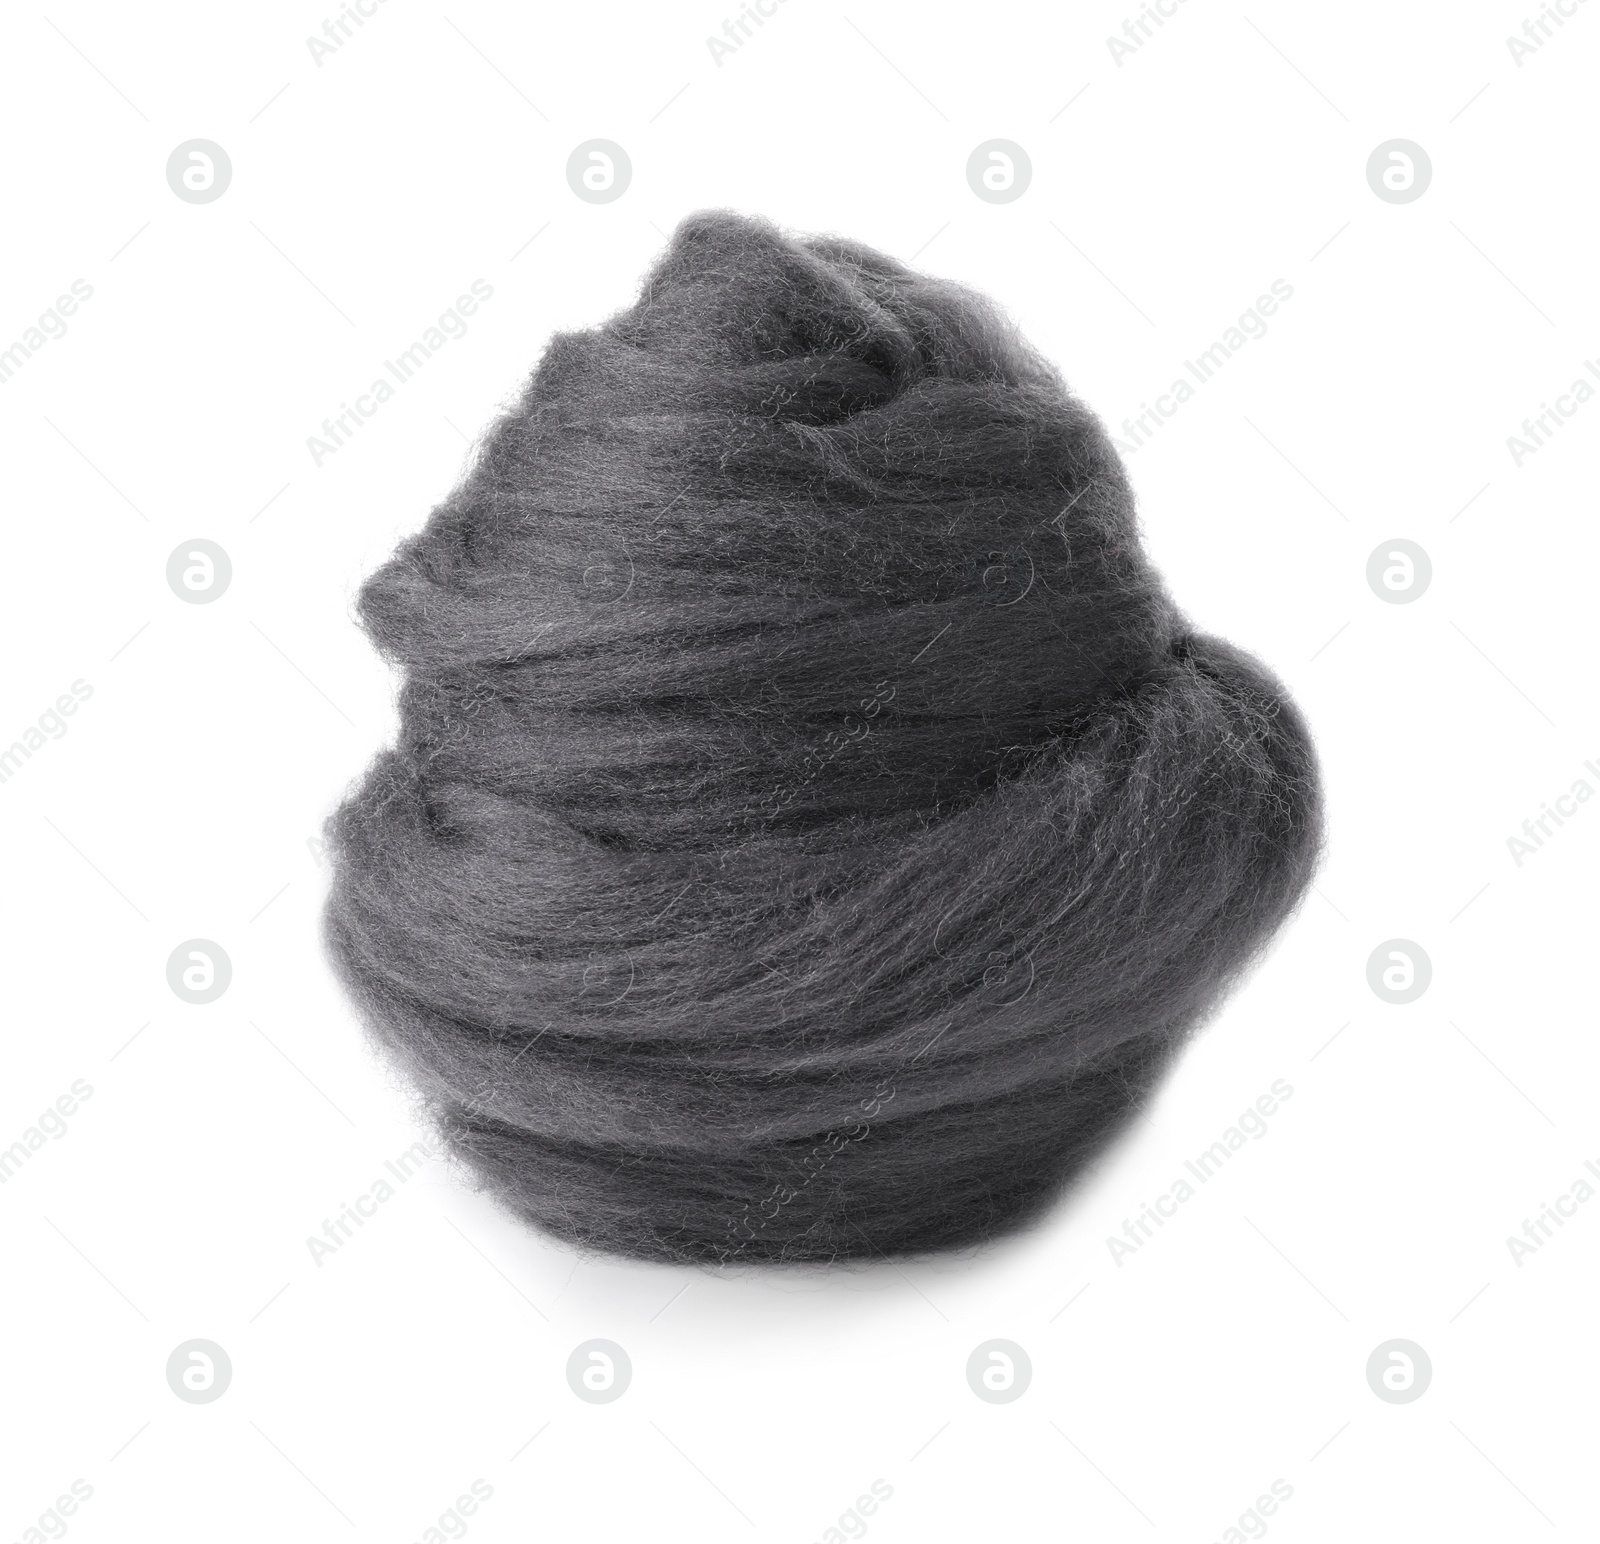 Photo of One grey felting wool isolated on white